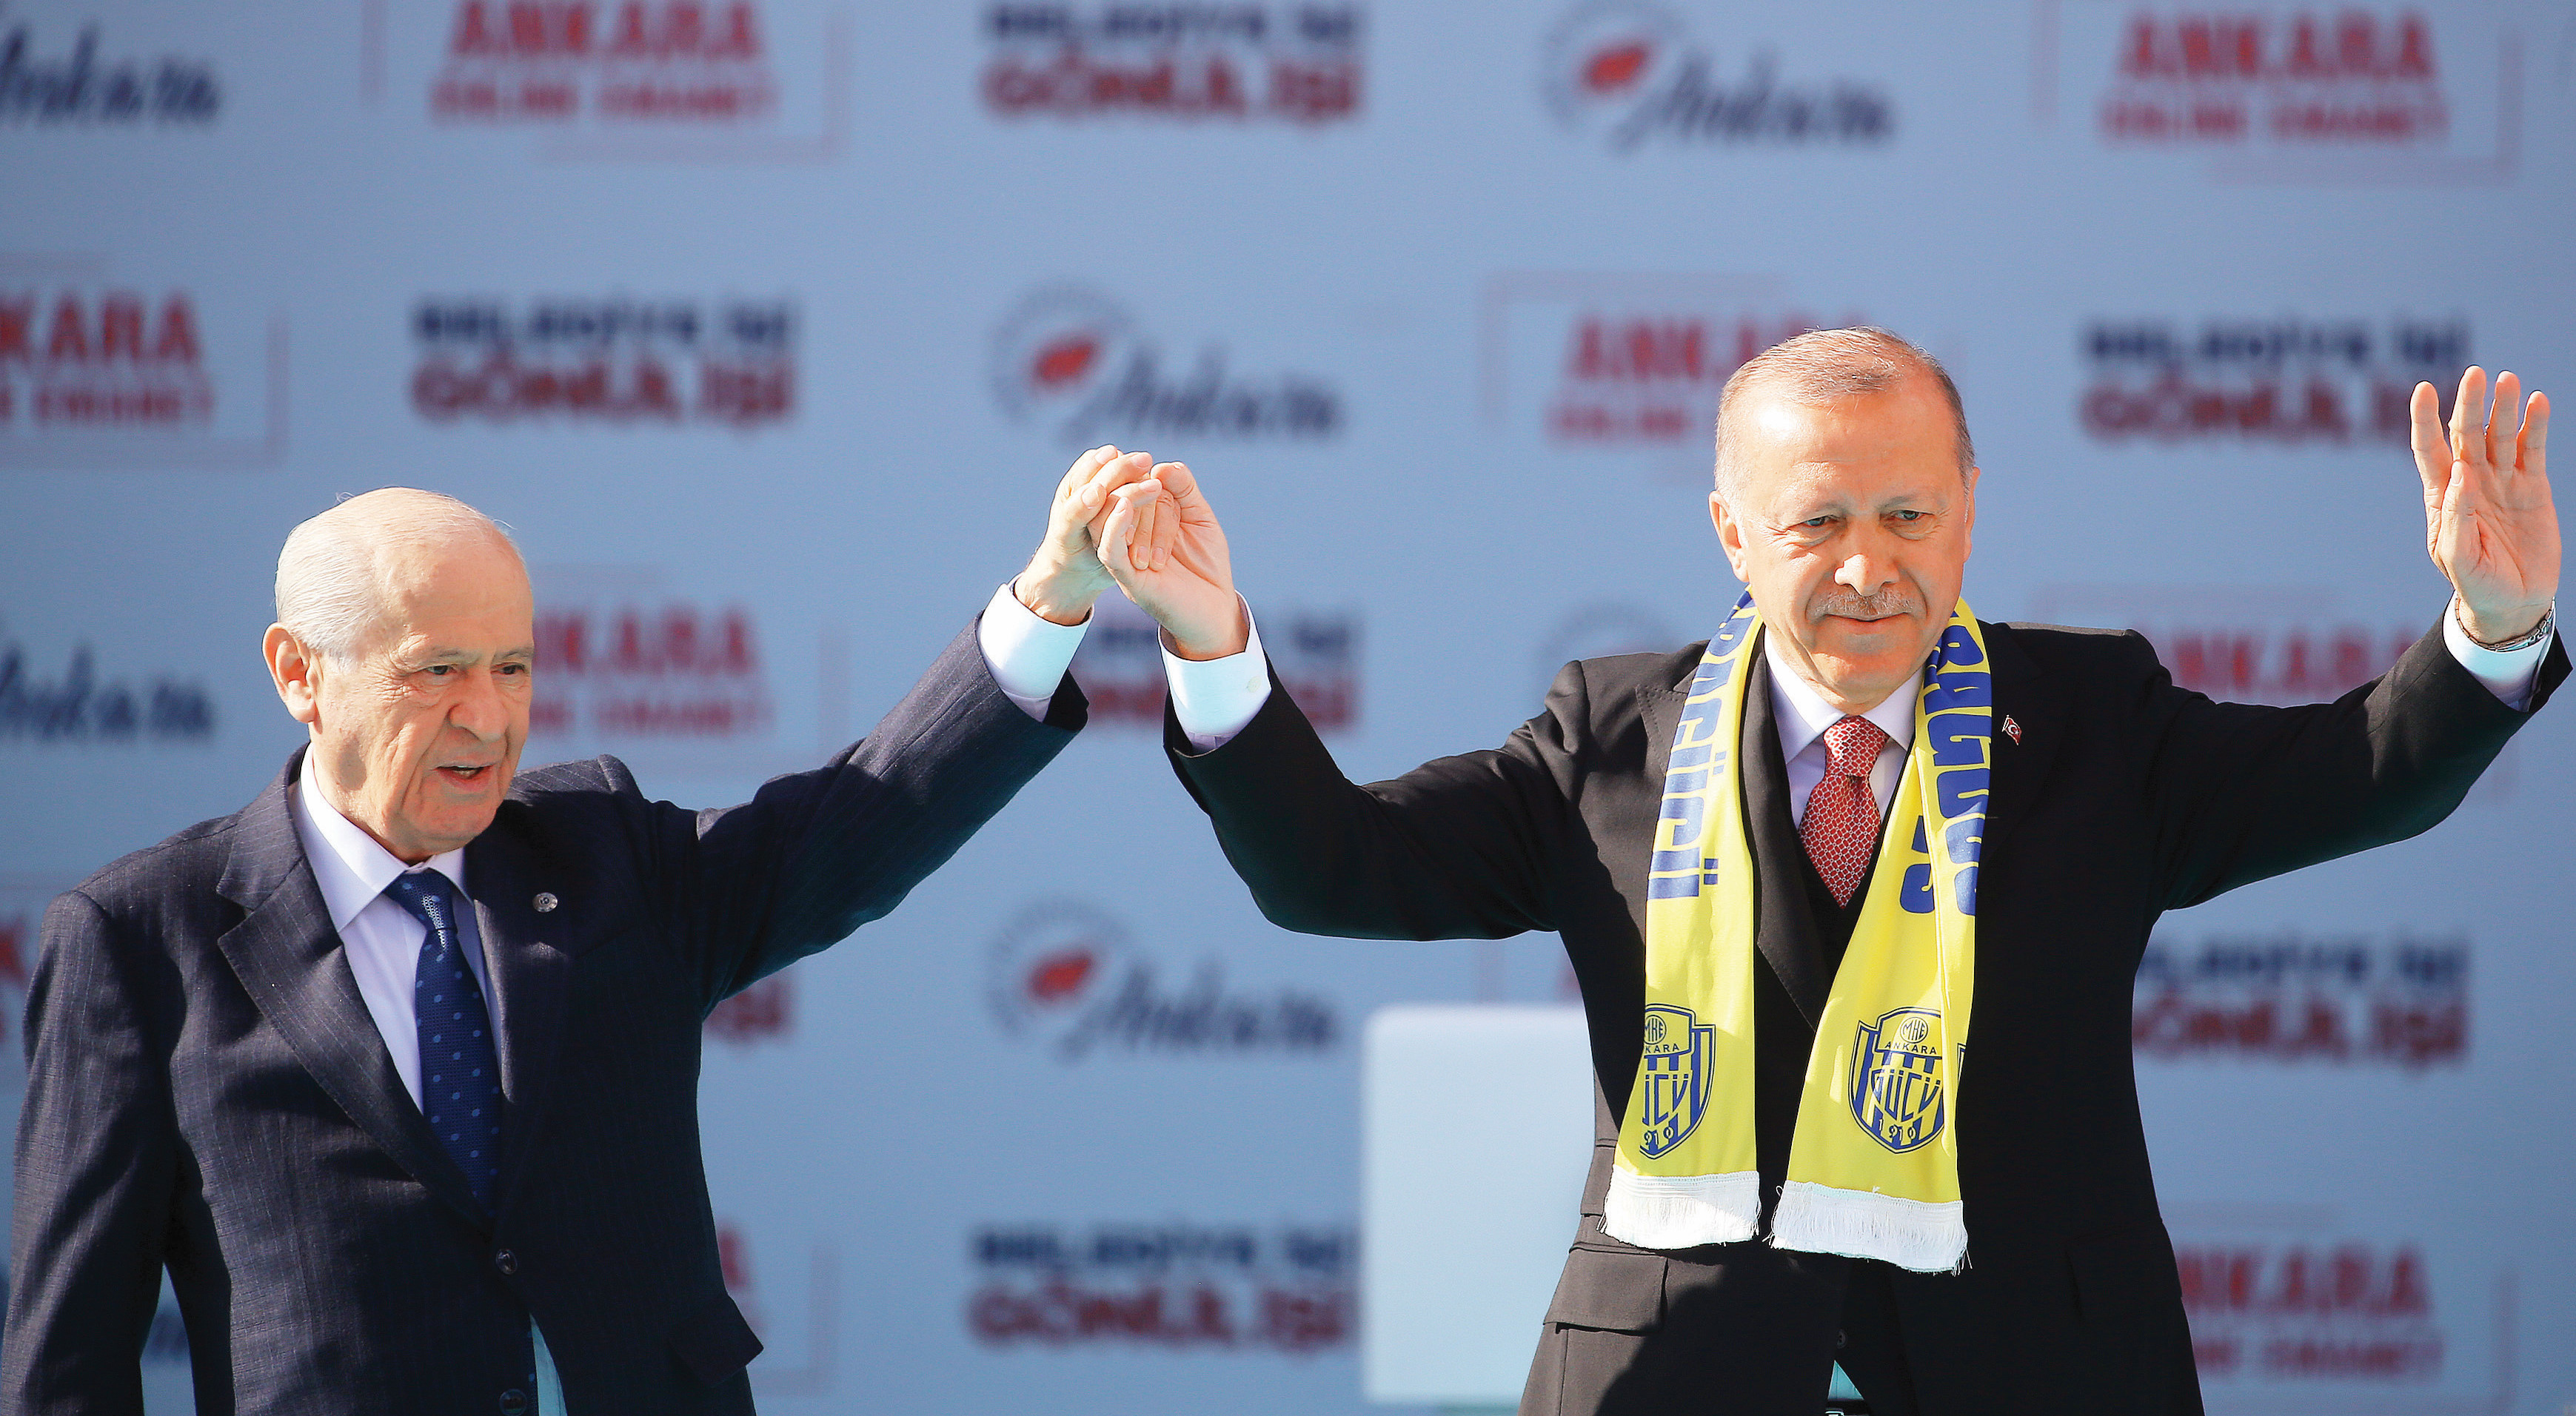 Devlet Bahçeli ve Recep Tayyip Erdoğan